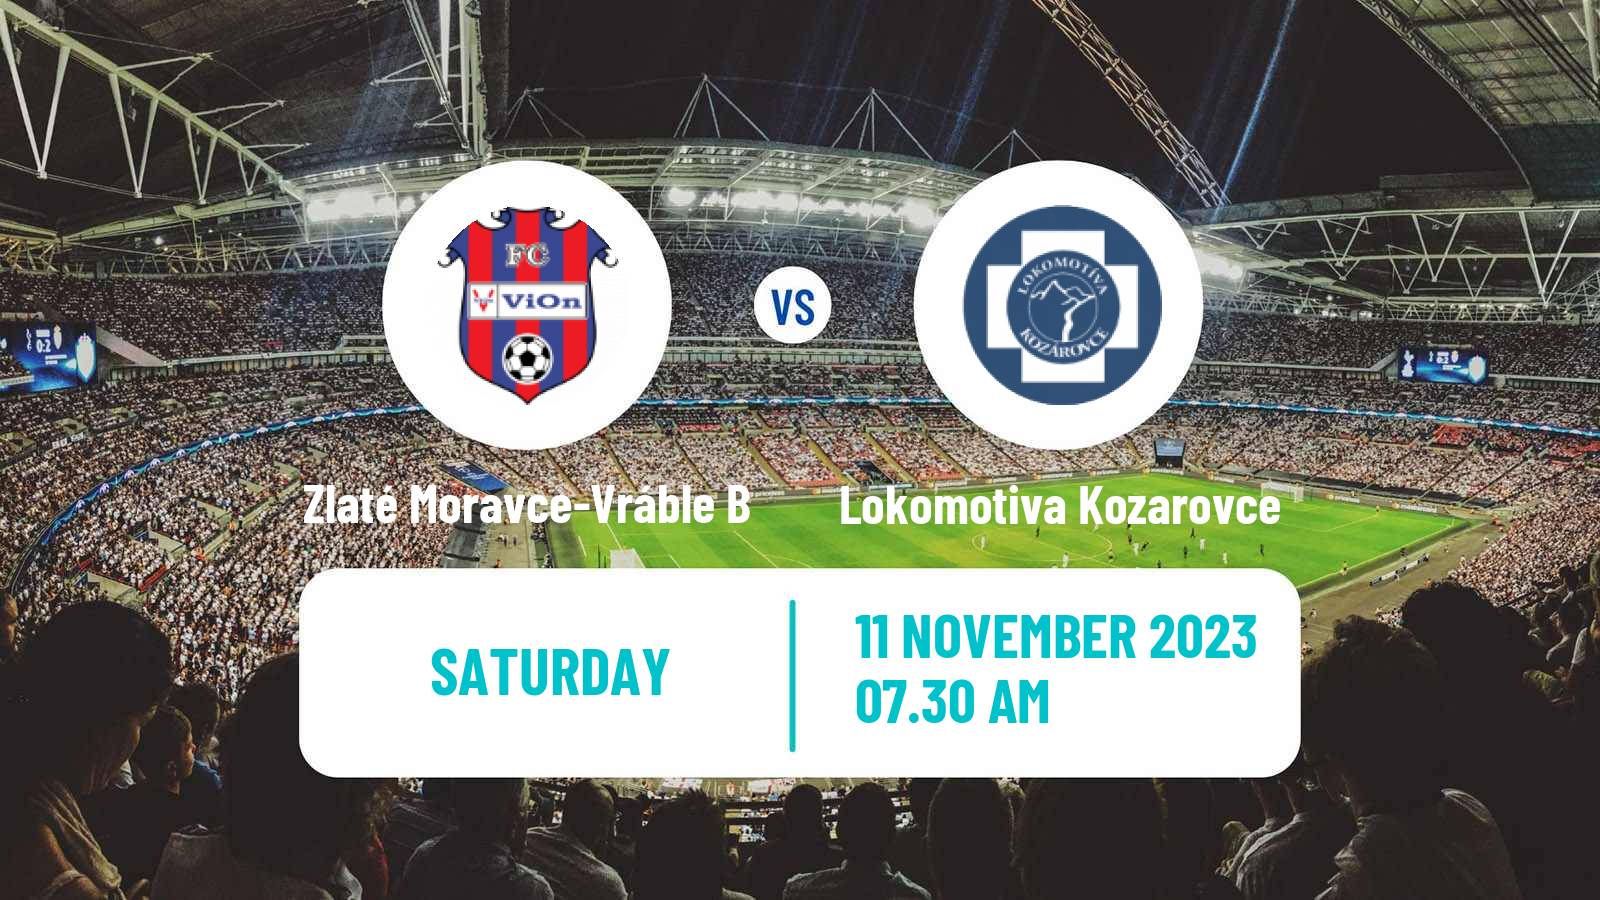 Soccer Slovak 4 Liga West Zlaté Moravce-Vráble B - Lokomotiva Kozarovce